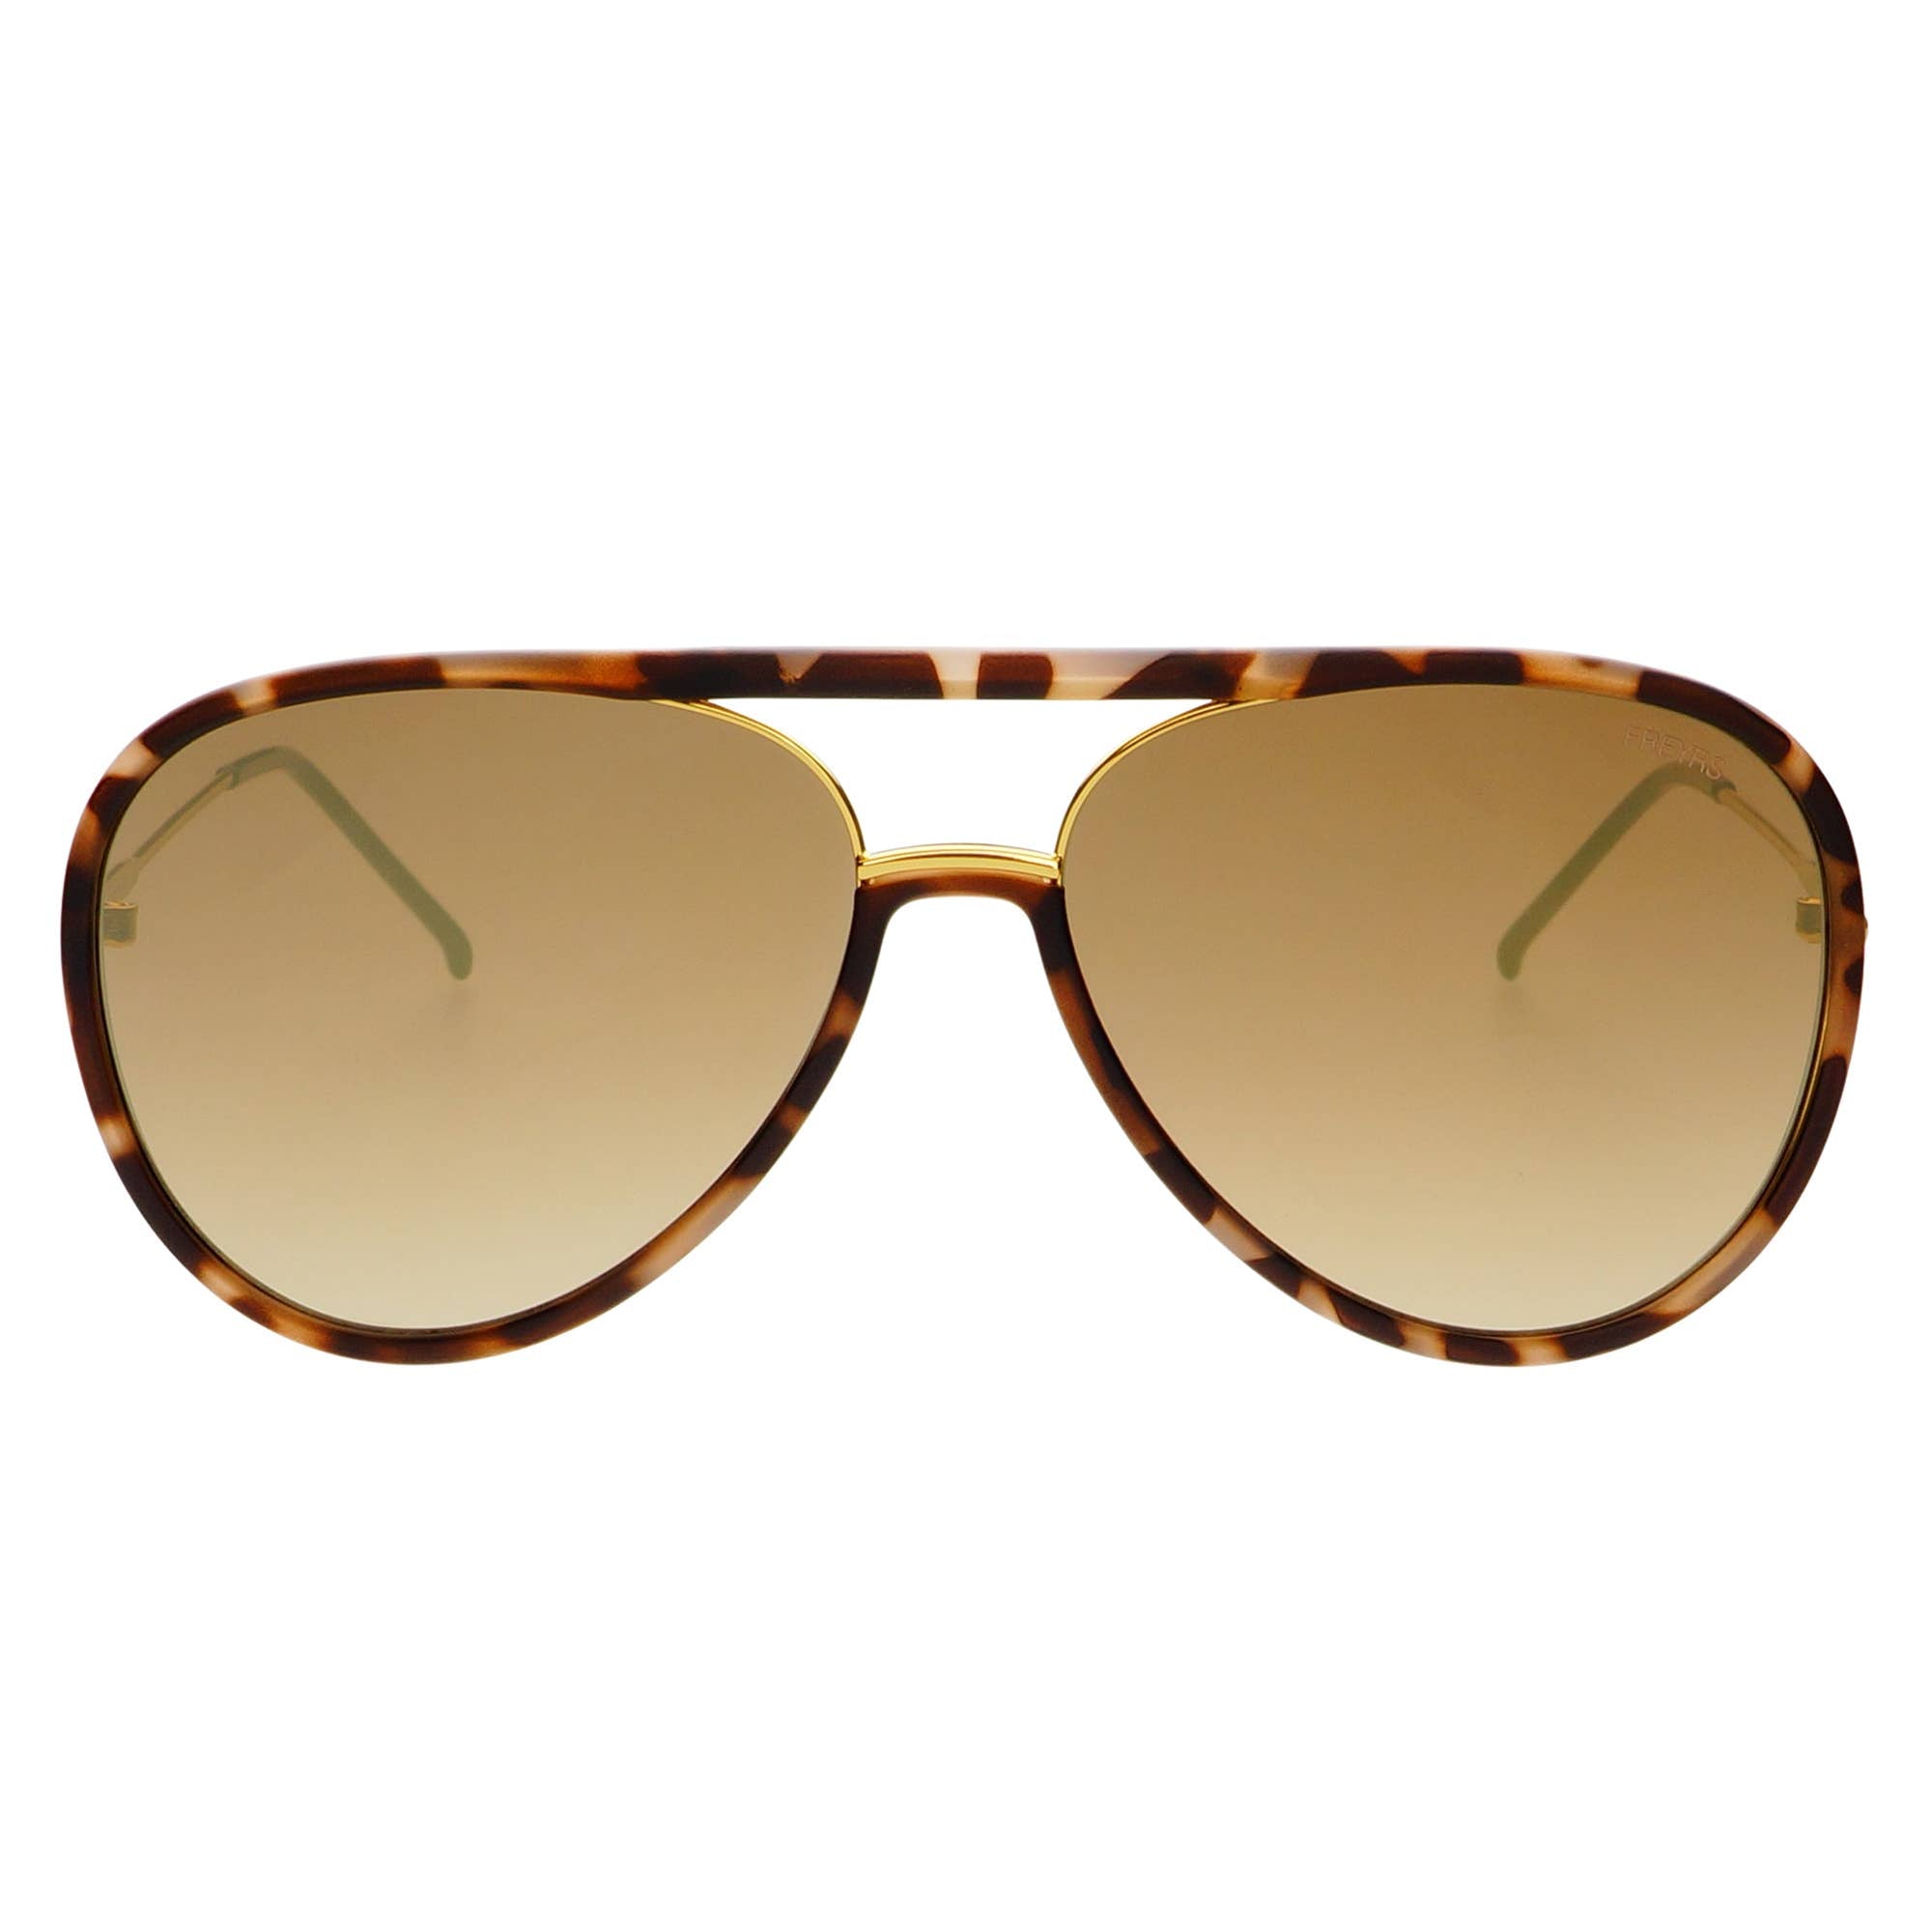 Shay Aviator Sunglasses Matte Tortoise/Gold Mirrored